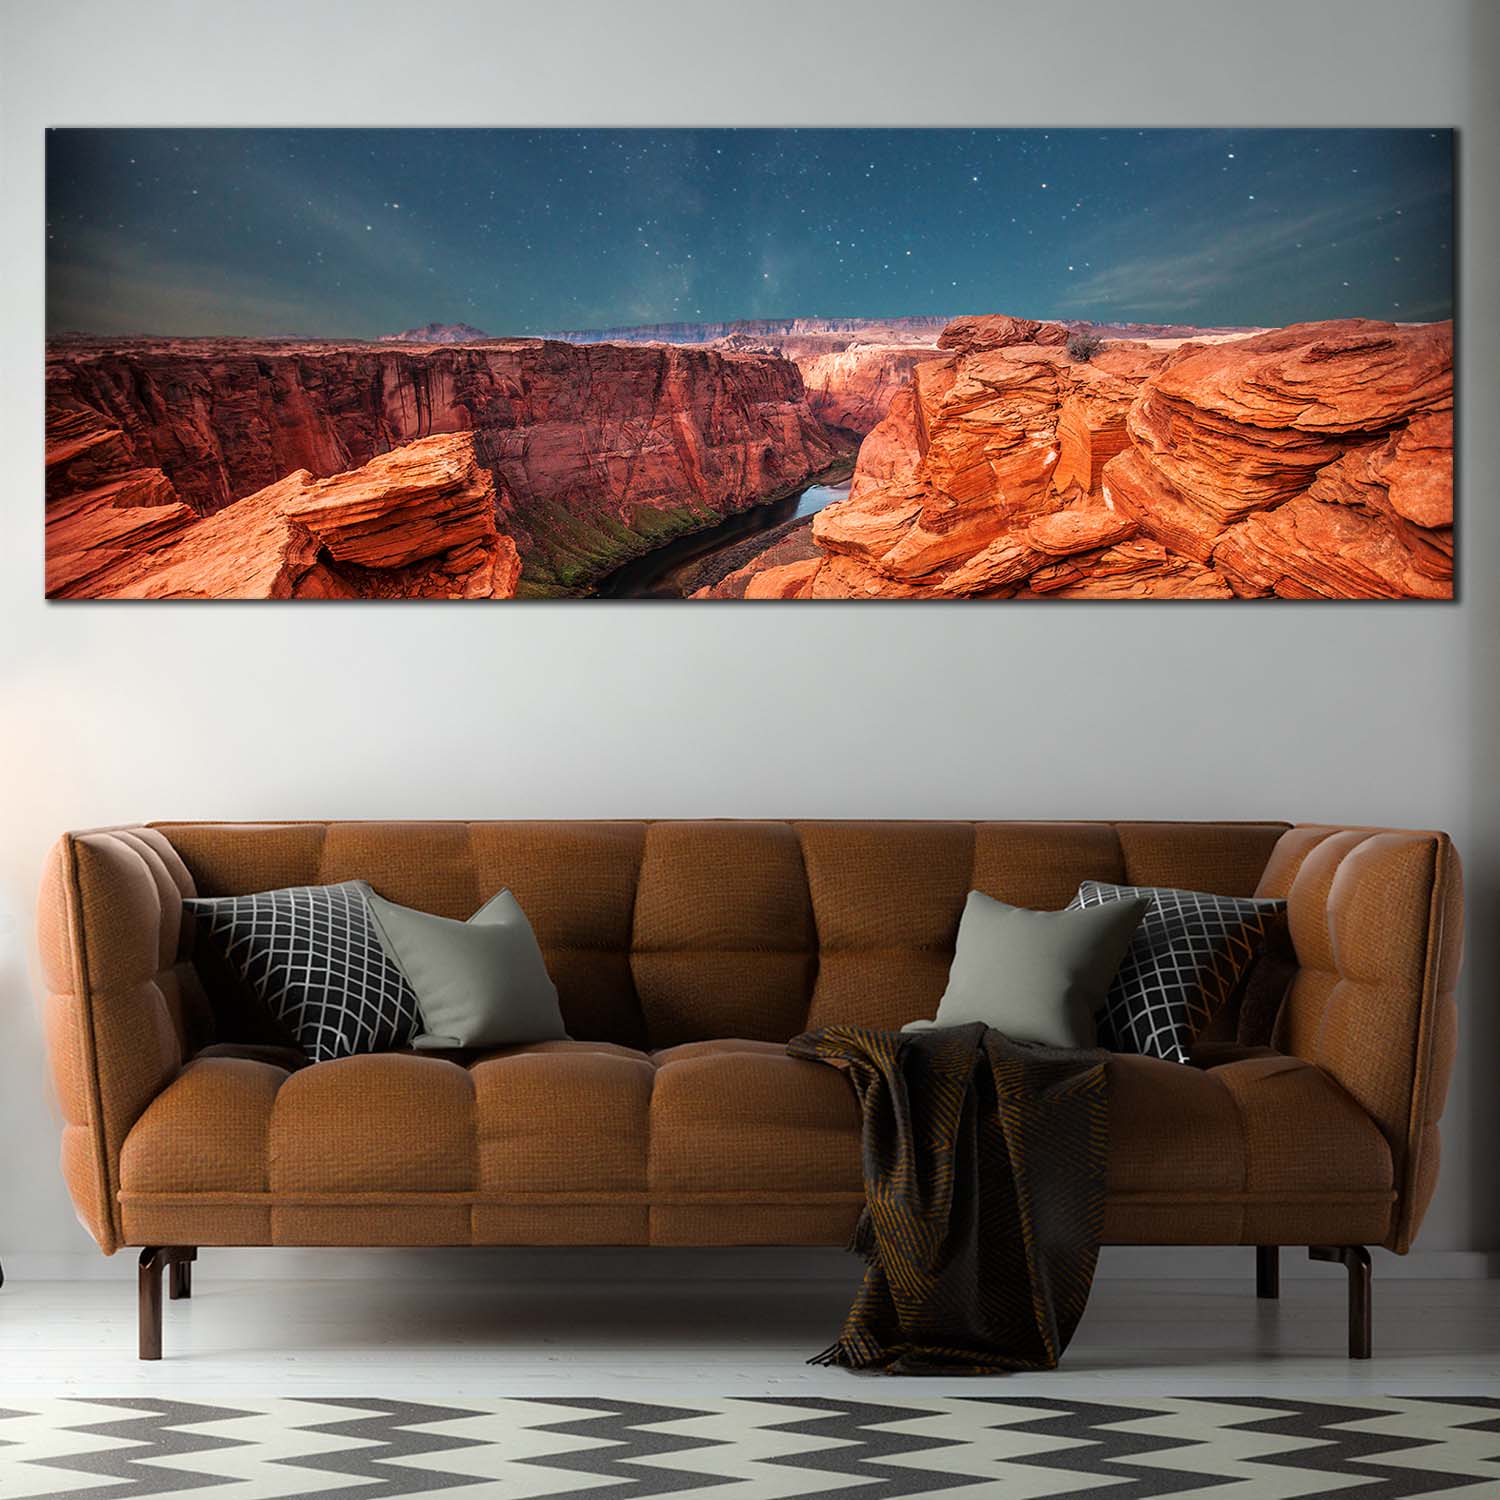 19+ Finest Desert canvas wall art images information